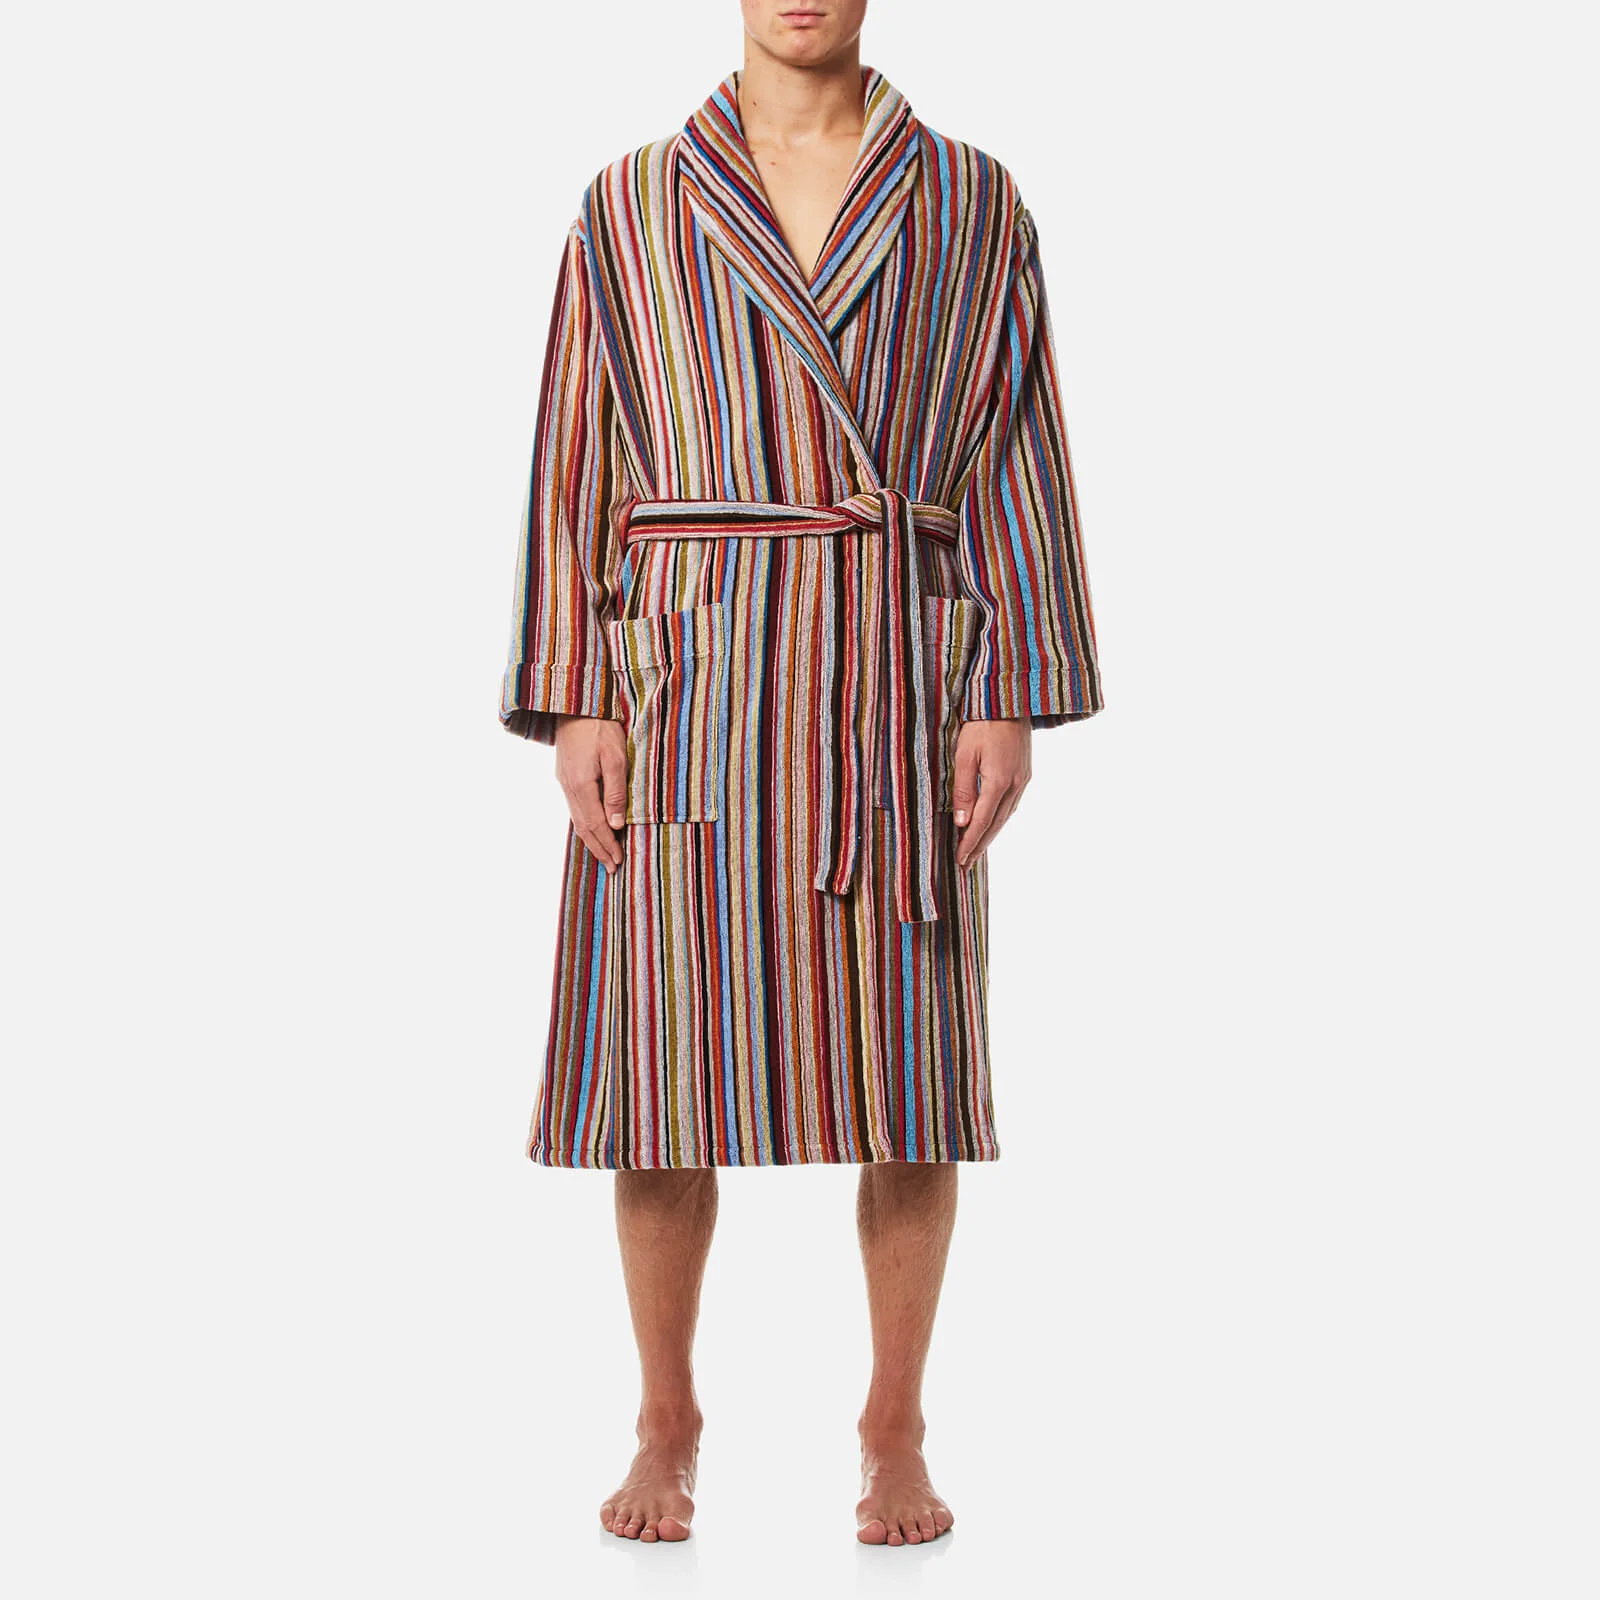 Paul Smith Men's Stripe Robe - Multi Image 1